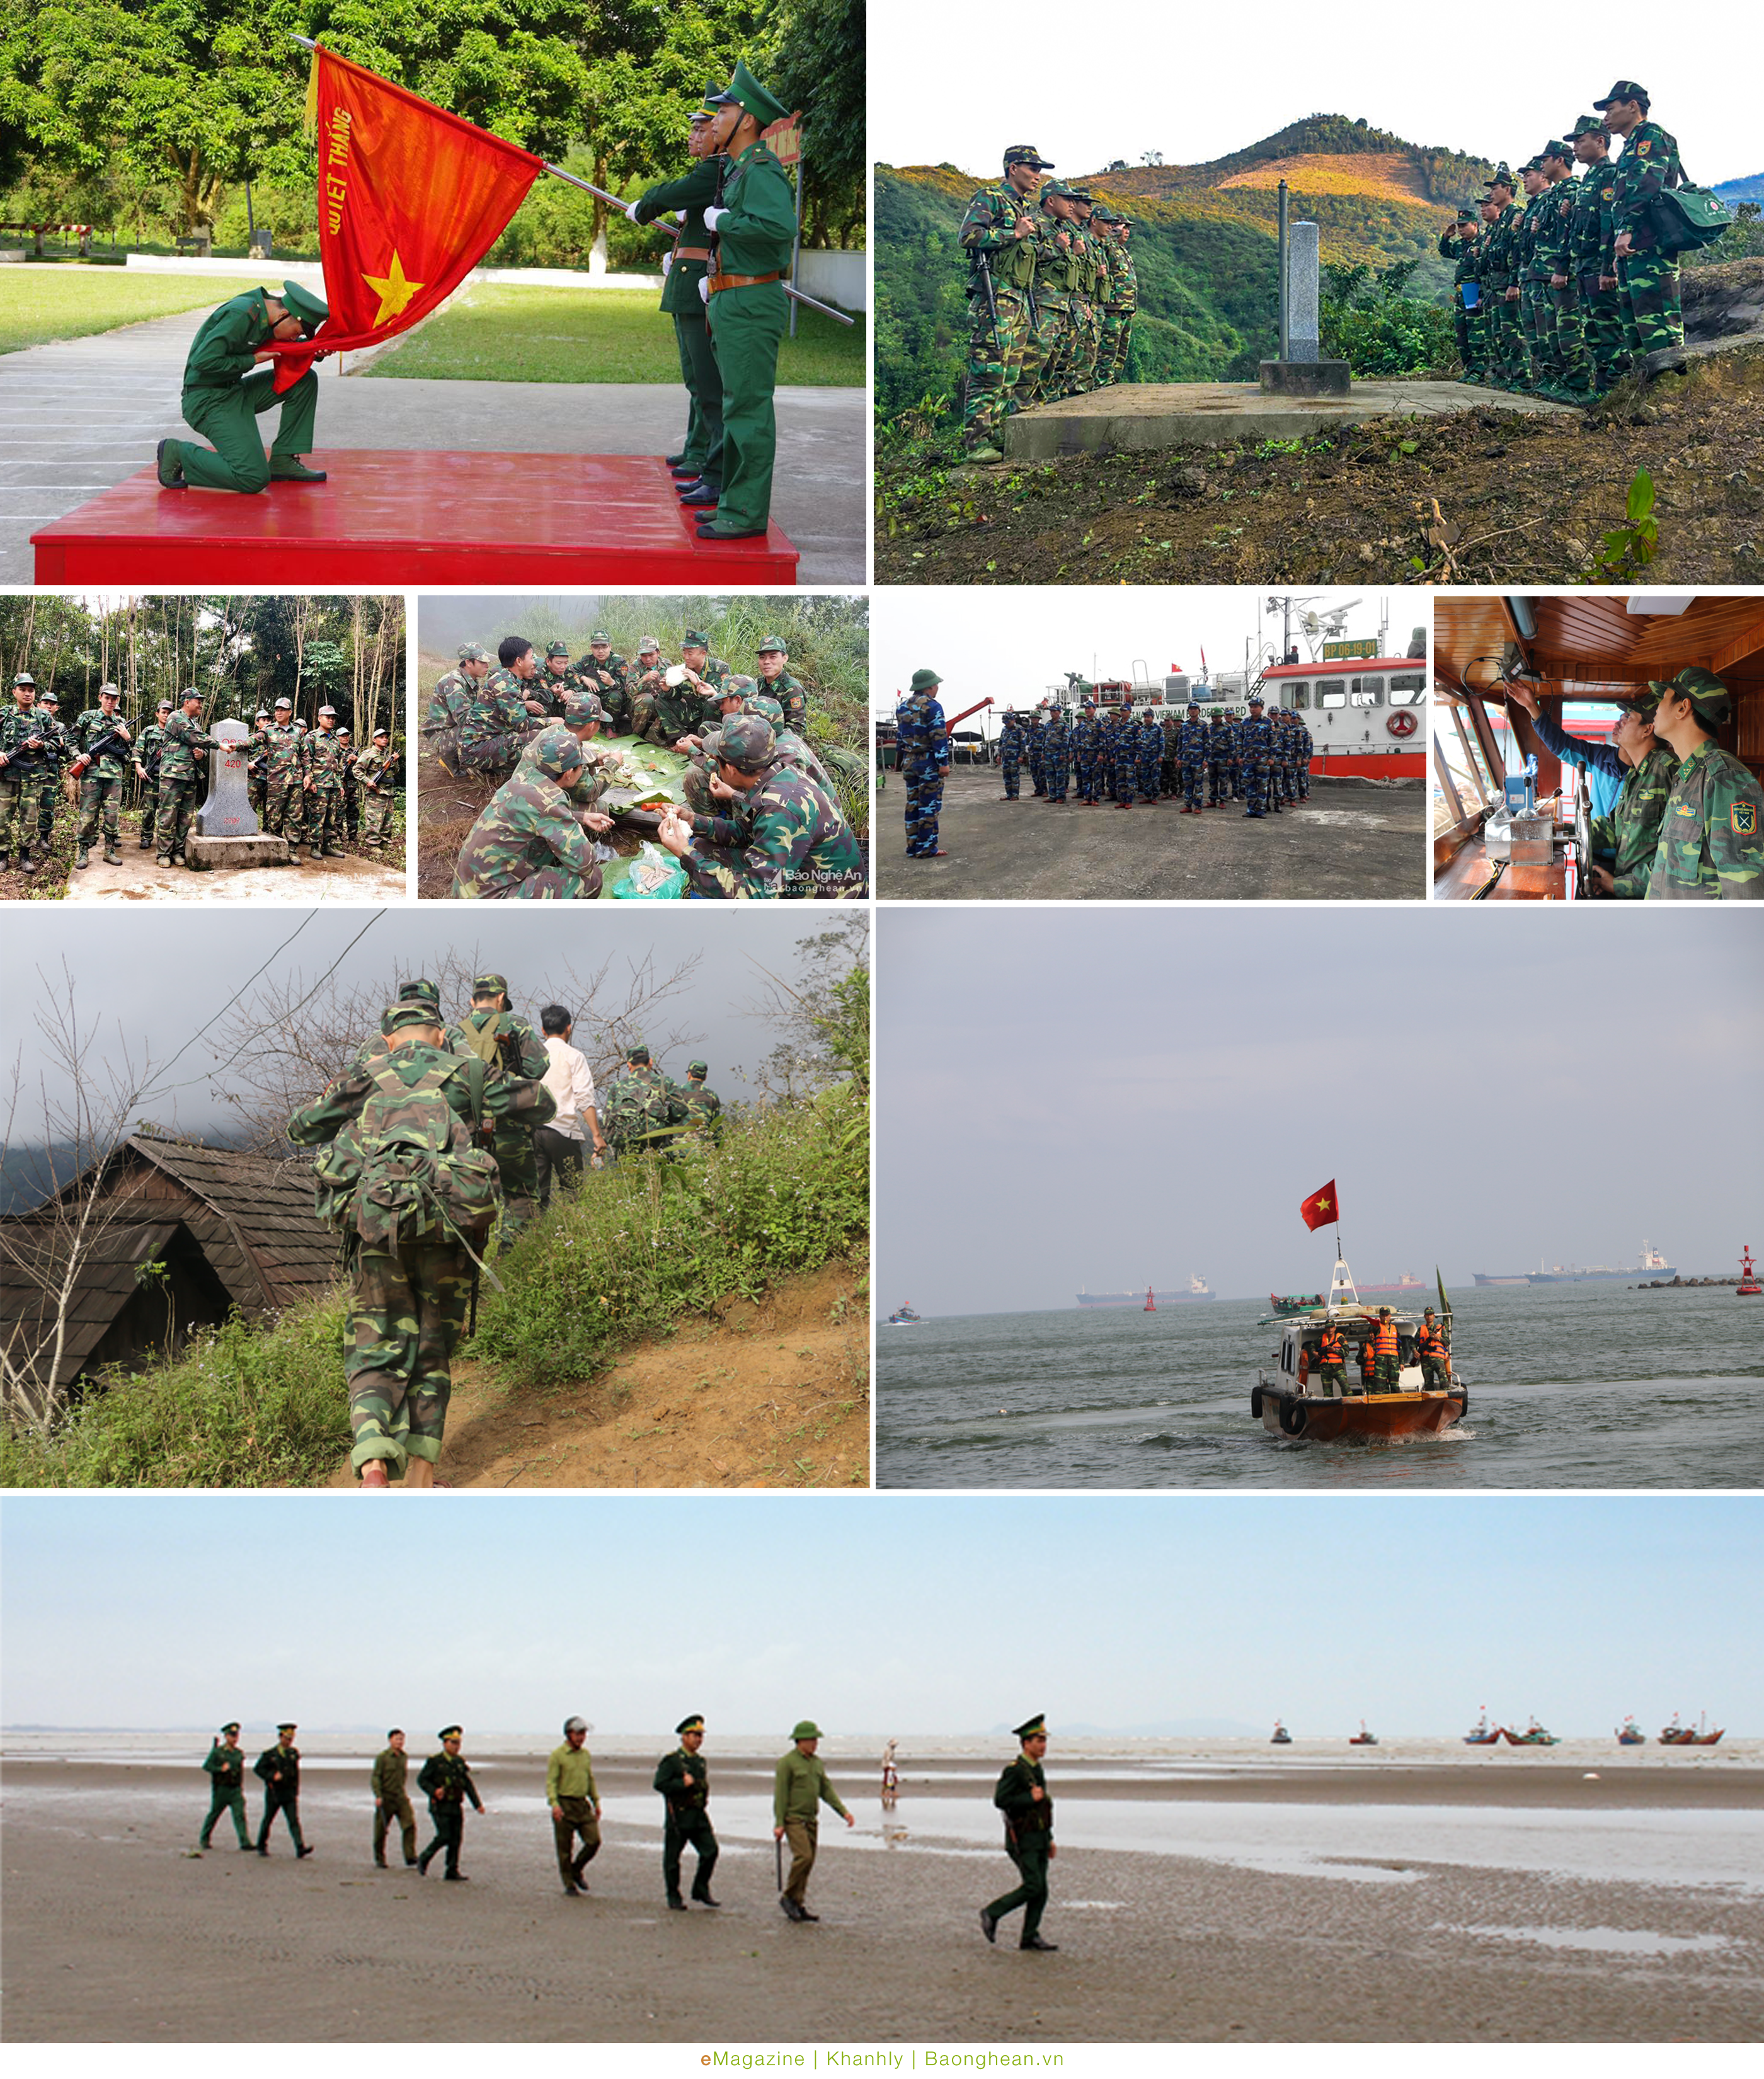 Chiến sỹ mới tuyên thệ; Hoạt động tuần tra song phương với nước bạn Lào cùng với đó các chiến sỹ, cán bộ Bộ đội Biên phòng luôn có mặt tại các điểm trọng yếu nơi biên giới trên đất liền cũng như biển đảo.